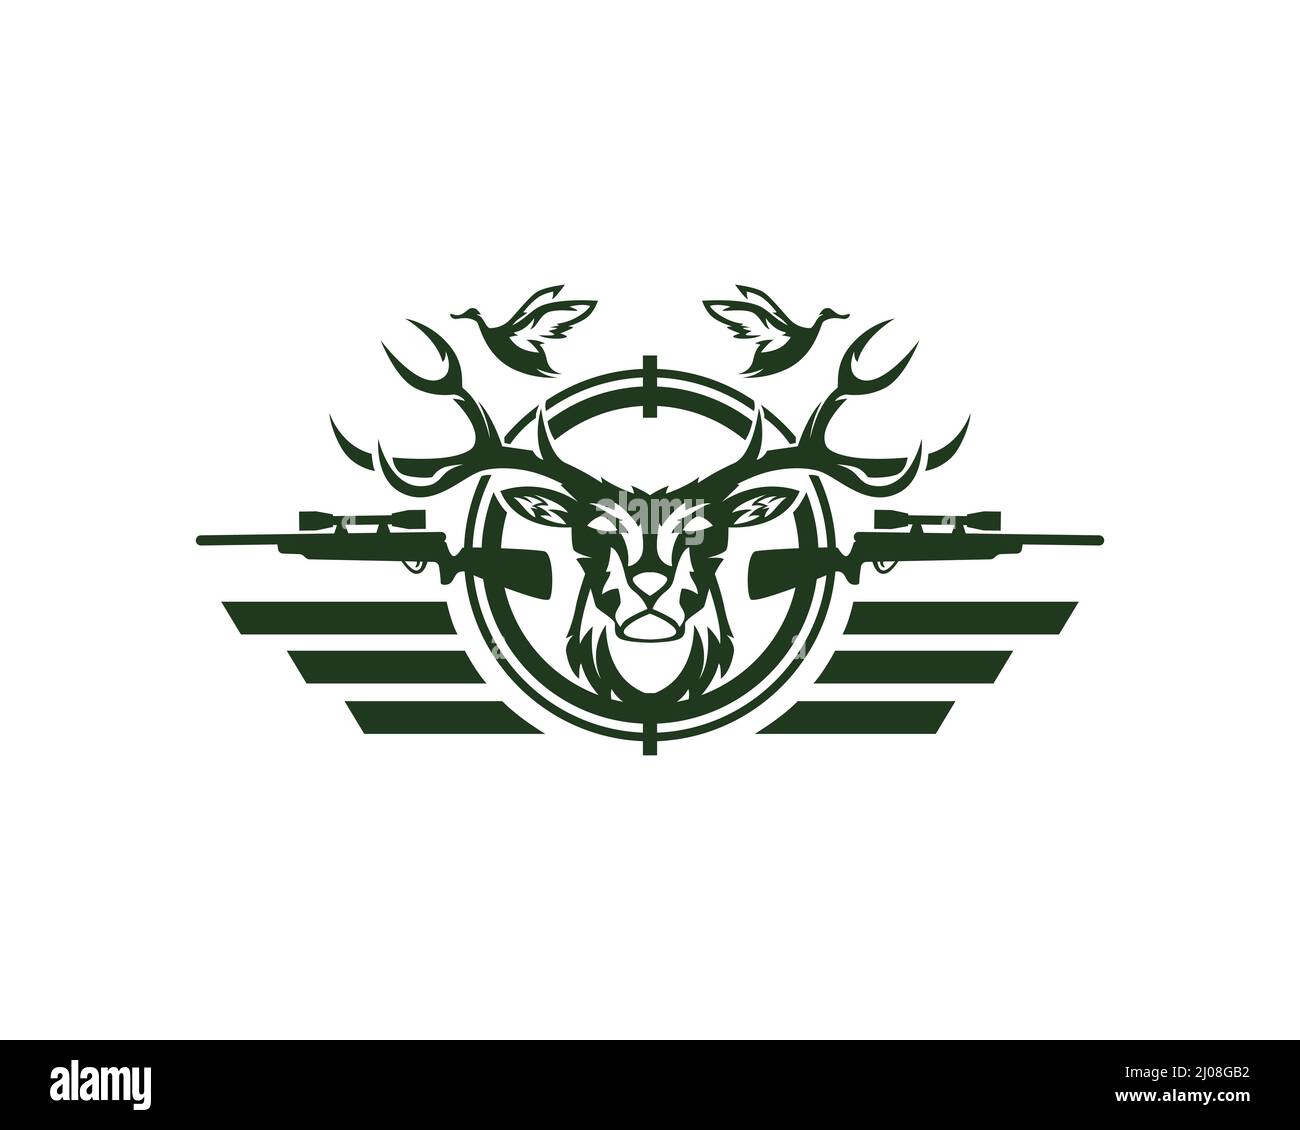 Deer et Duck Hunting logo Club et Sports Illustration de Vecteur